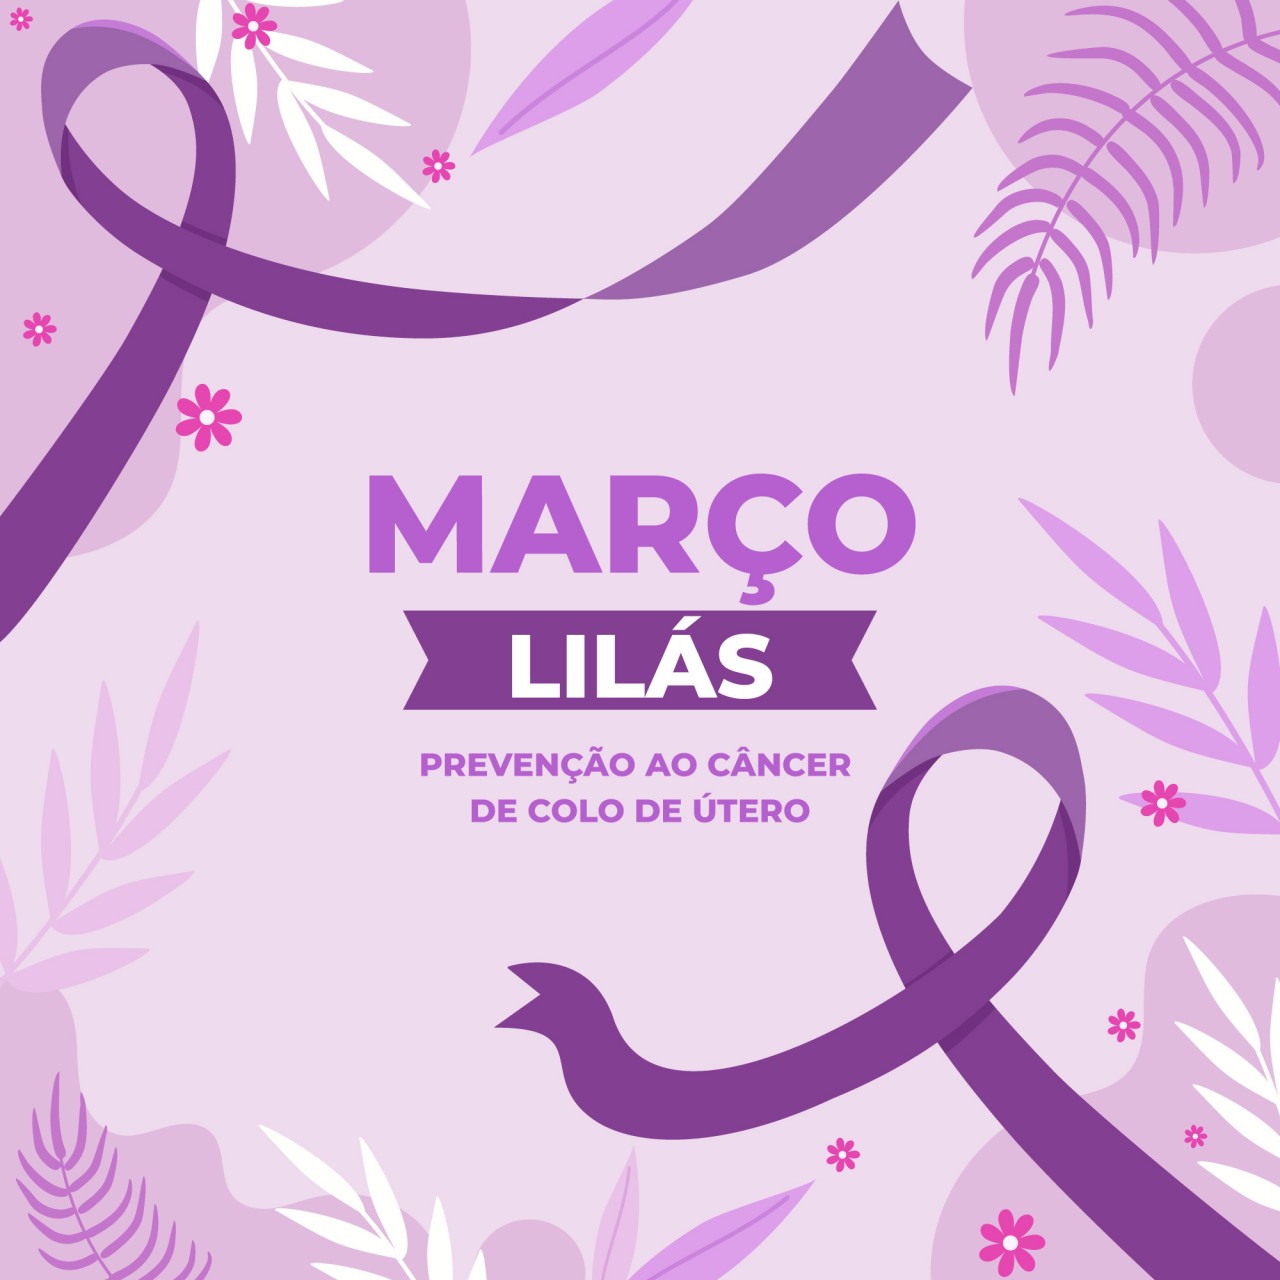 Março lilás: Mês de prevenção do câncer de colo de útero